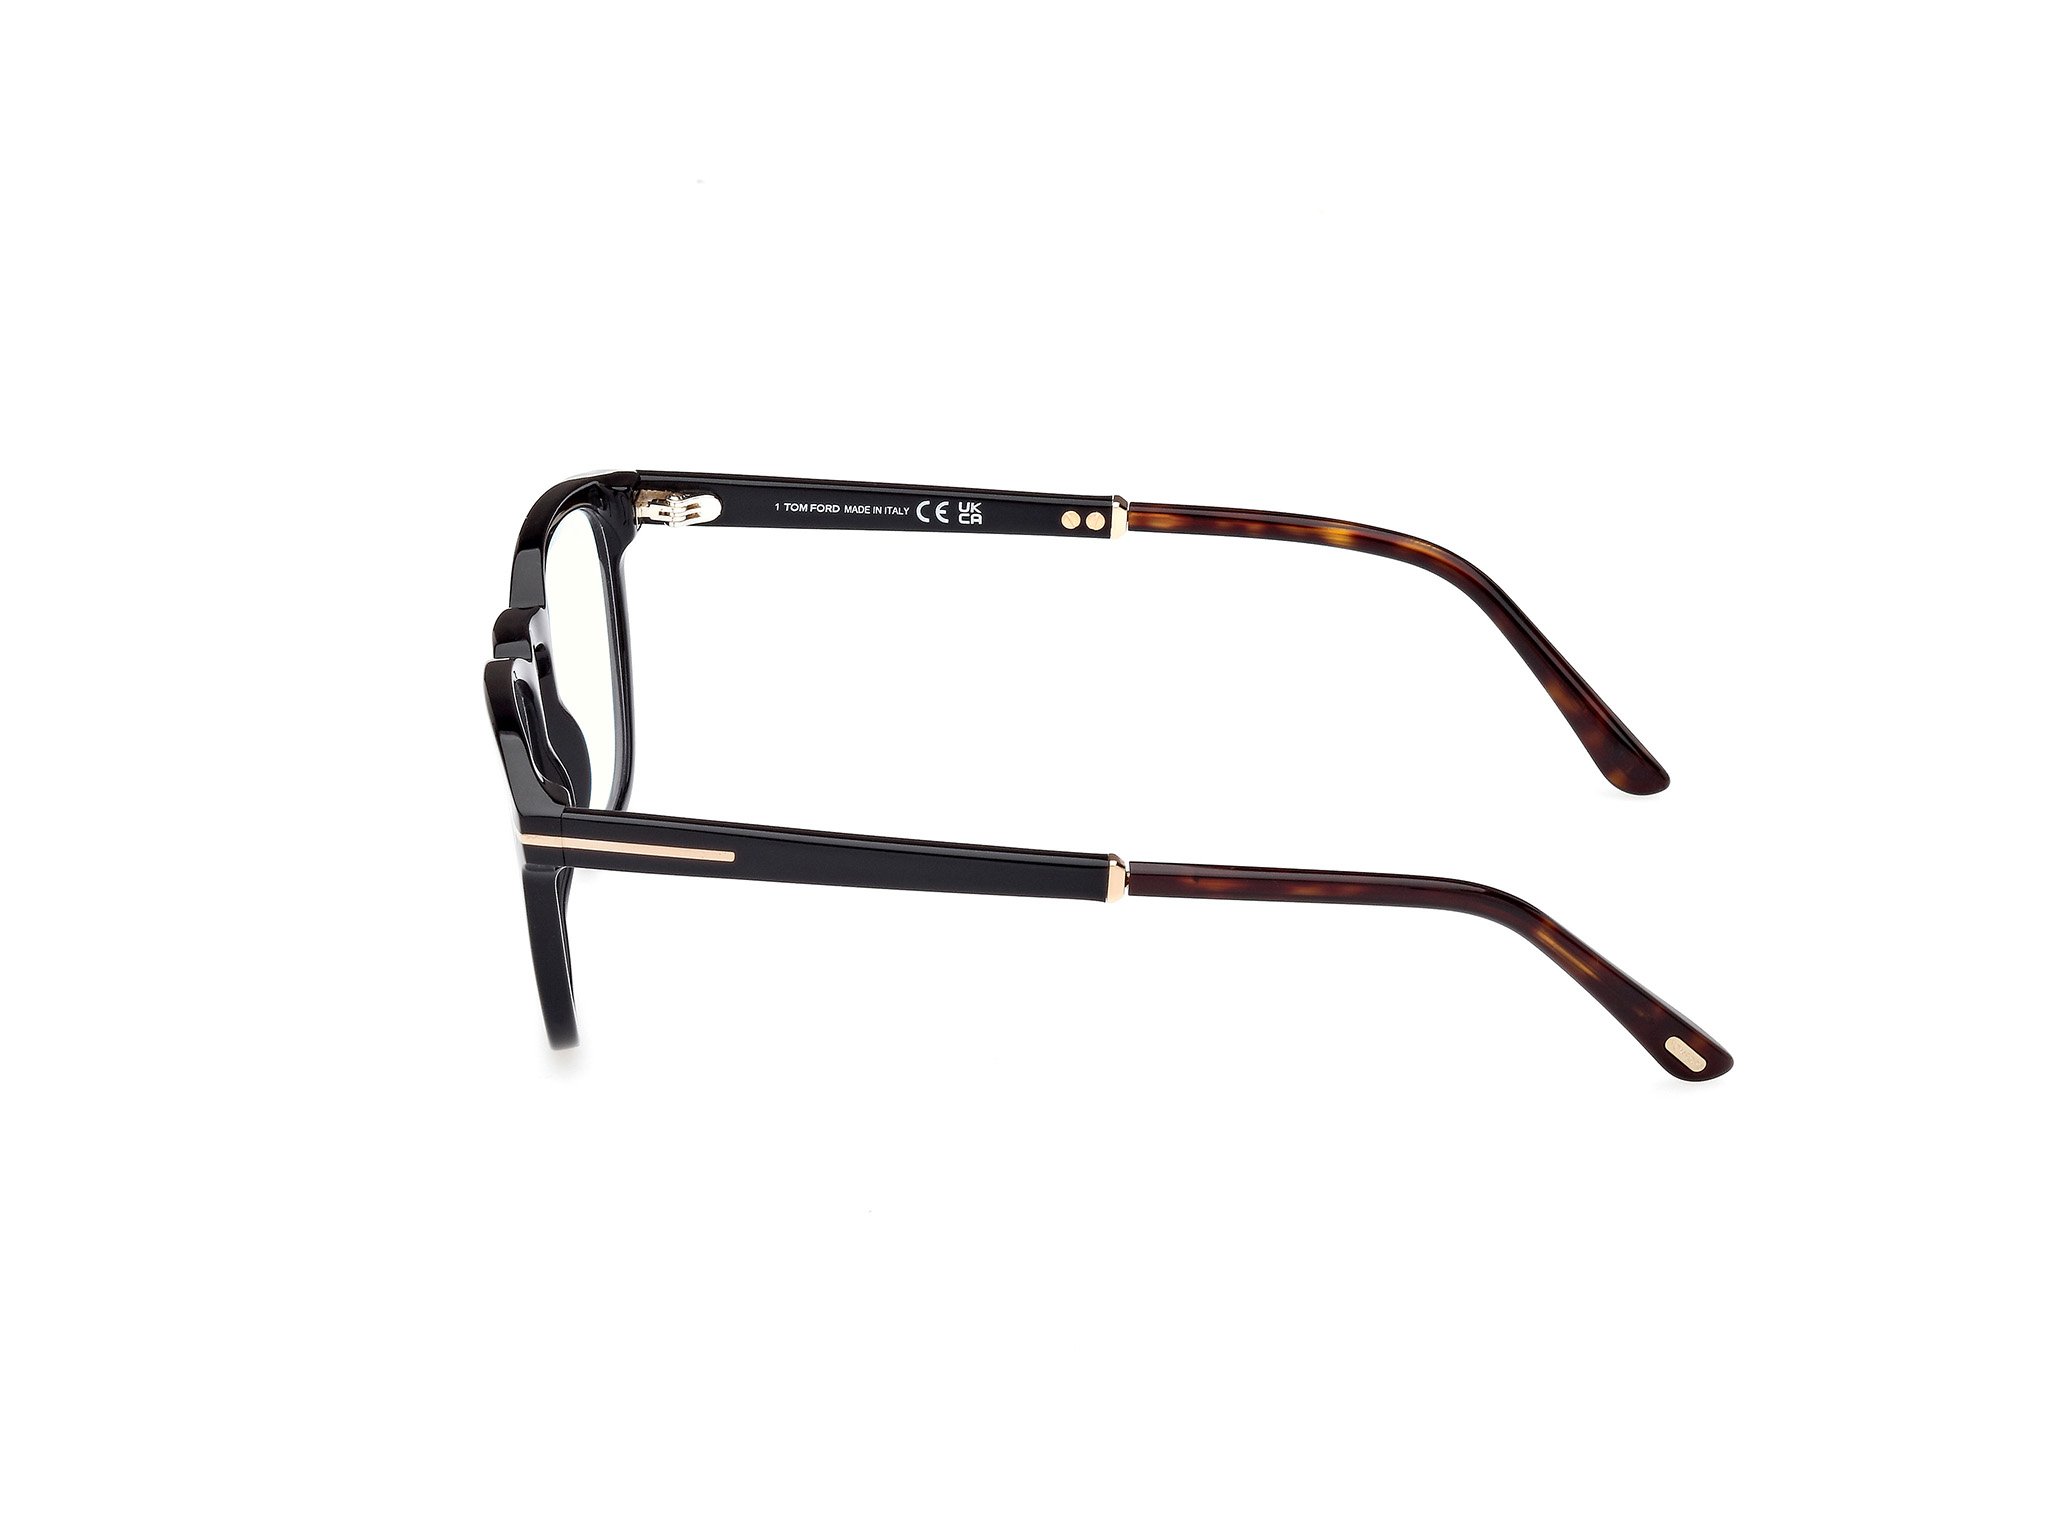 Das Bild zeigt die Korrektionsbrille FT5890-B 005 von der Marke Tom Ford in schwarz.